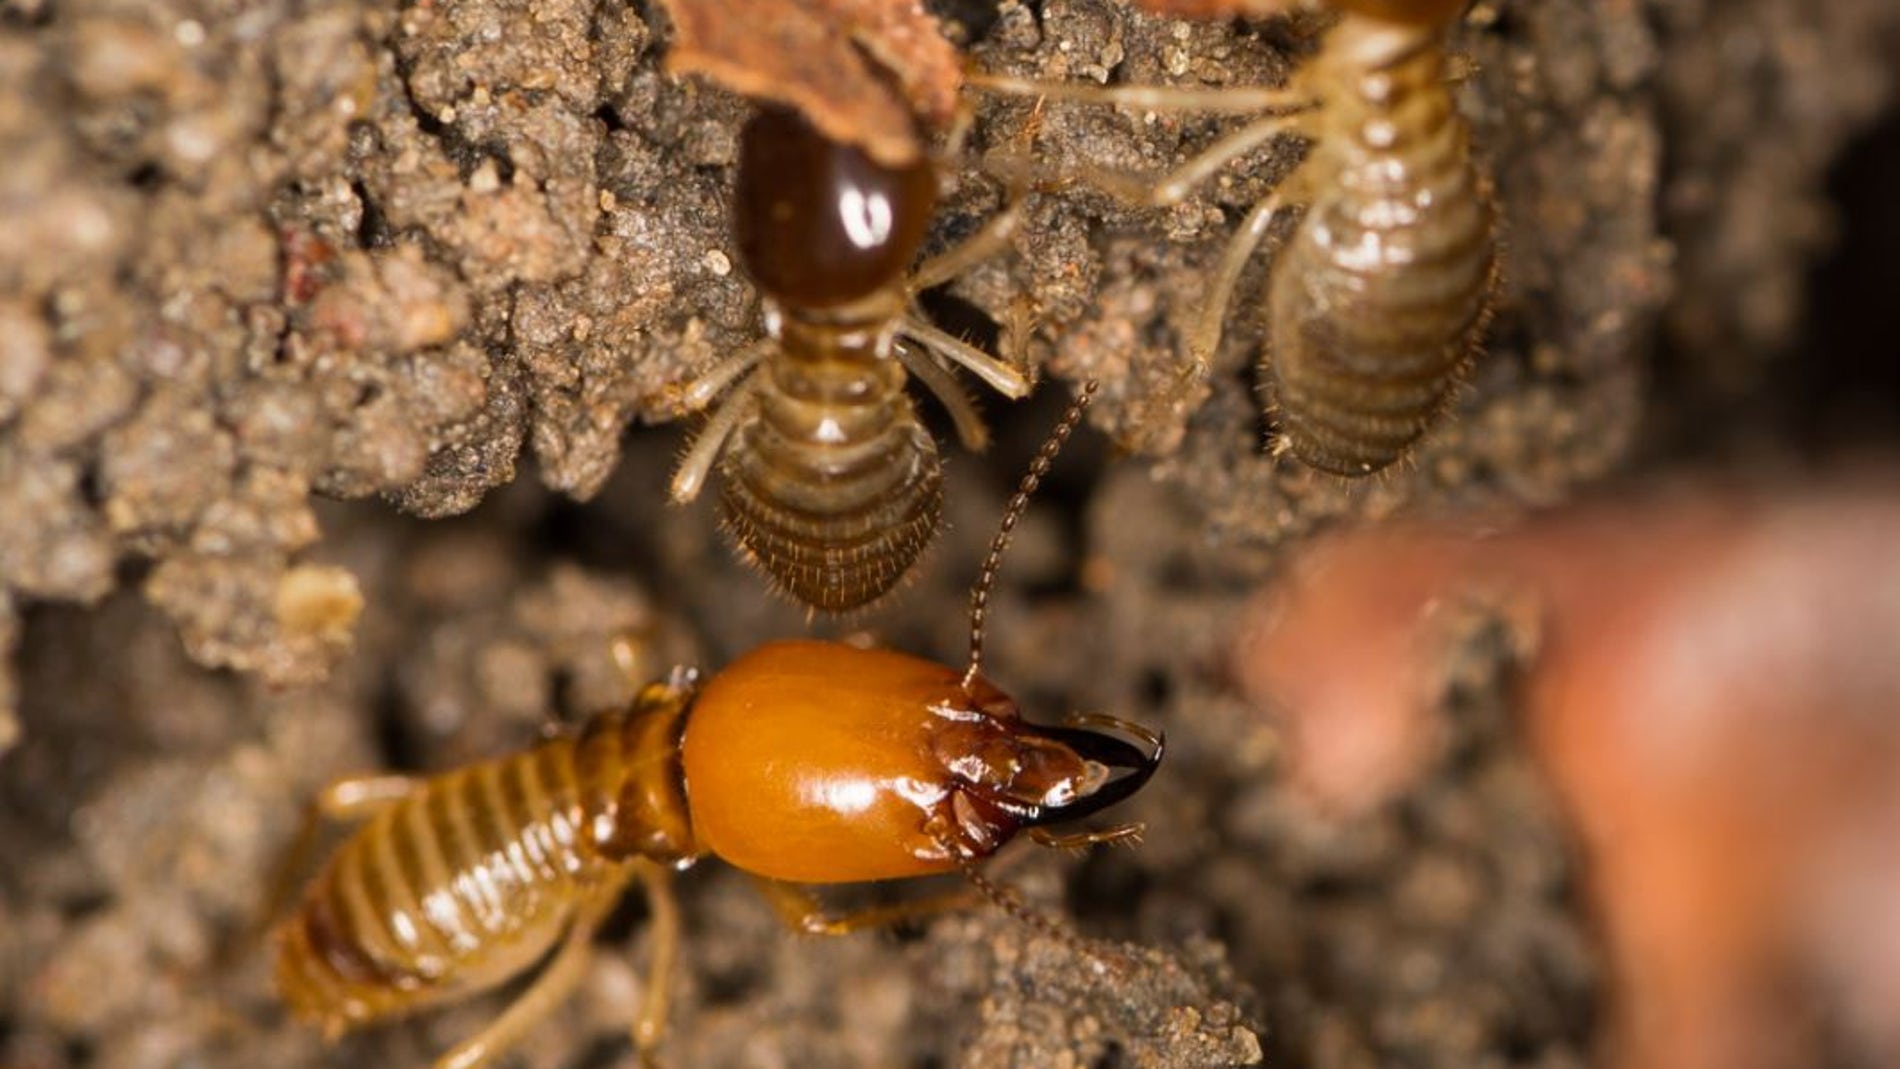 Como las termitas se convirtieron en insectos organizados socialmente